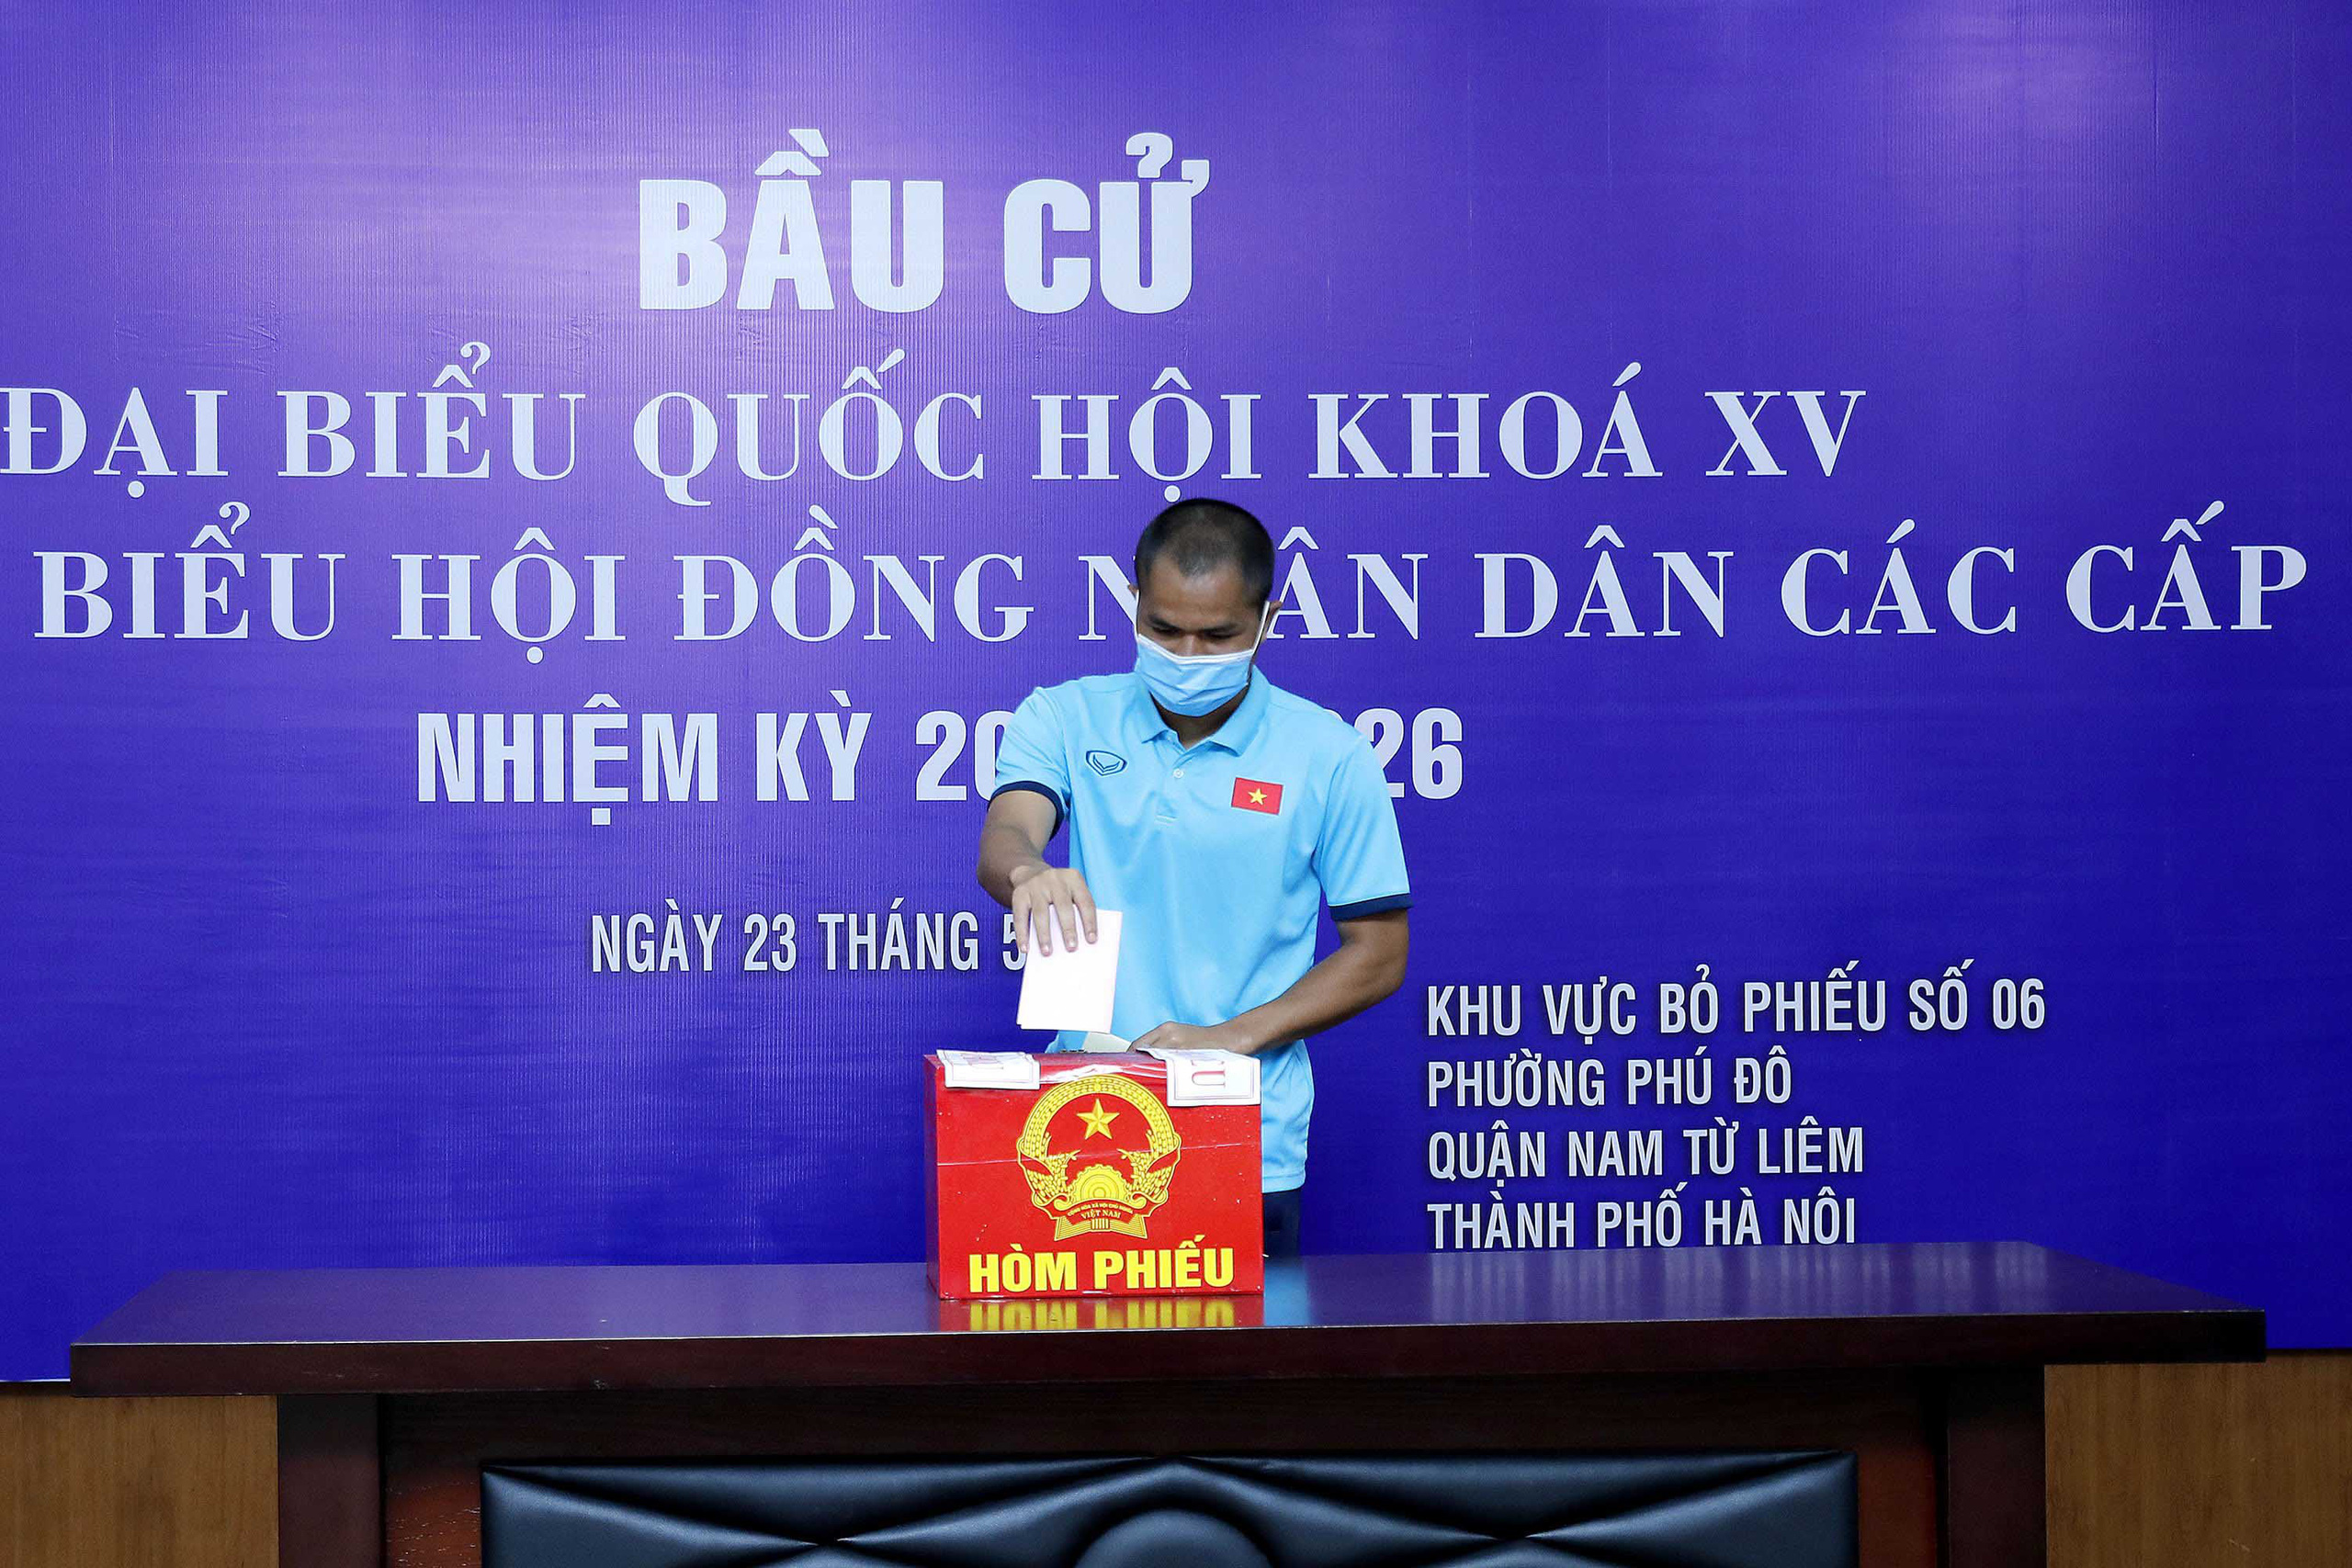 Cận cảnh các tuyển thủ bóng đá Việt Nam vui tươi bỏ phiếu bầu cử - Ảnh 11.